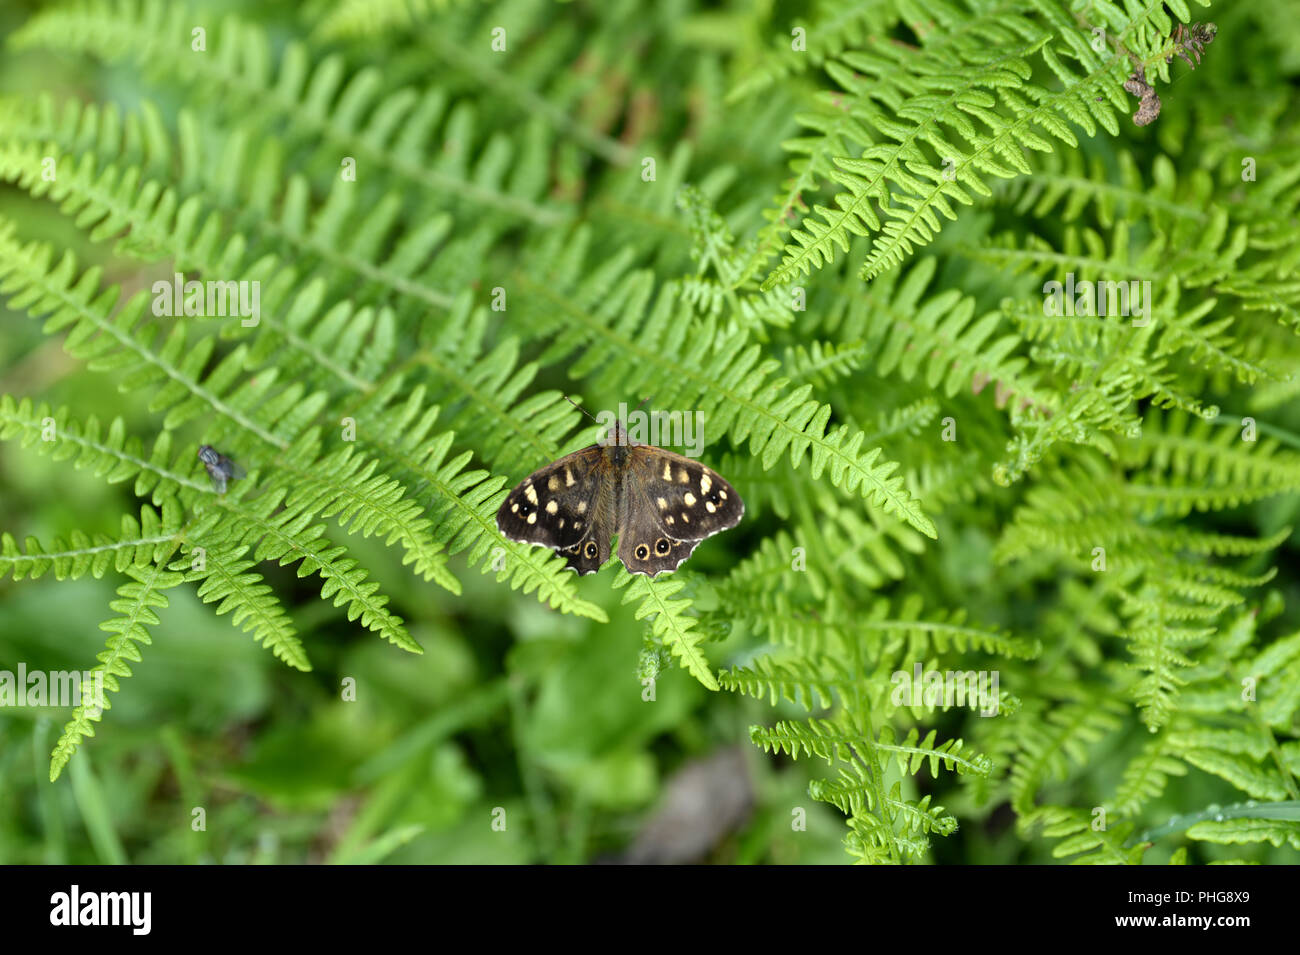 Papillon sur bois mouchetée bracken feuilles en bordure des bois montrant les ailes brun avec des taches jaune-crème. Une mouche domestique donne une idée d'échelle Banque D'Images